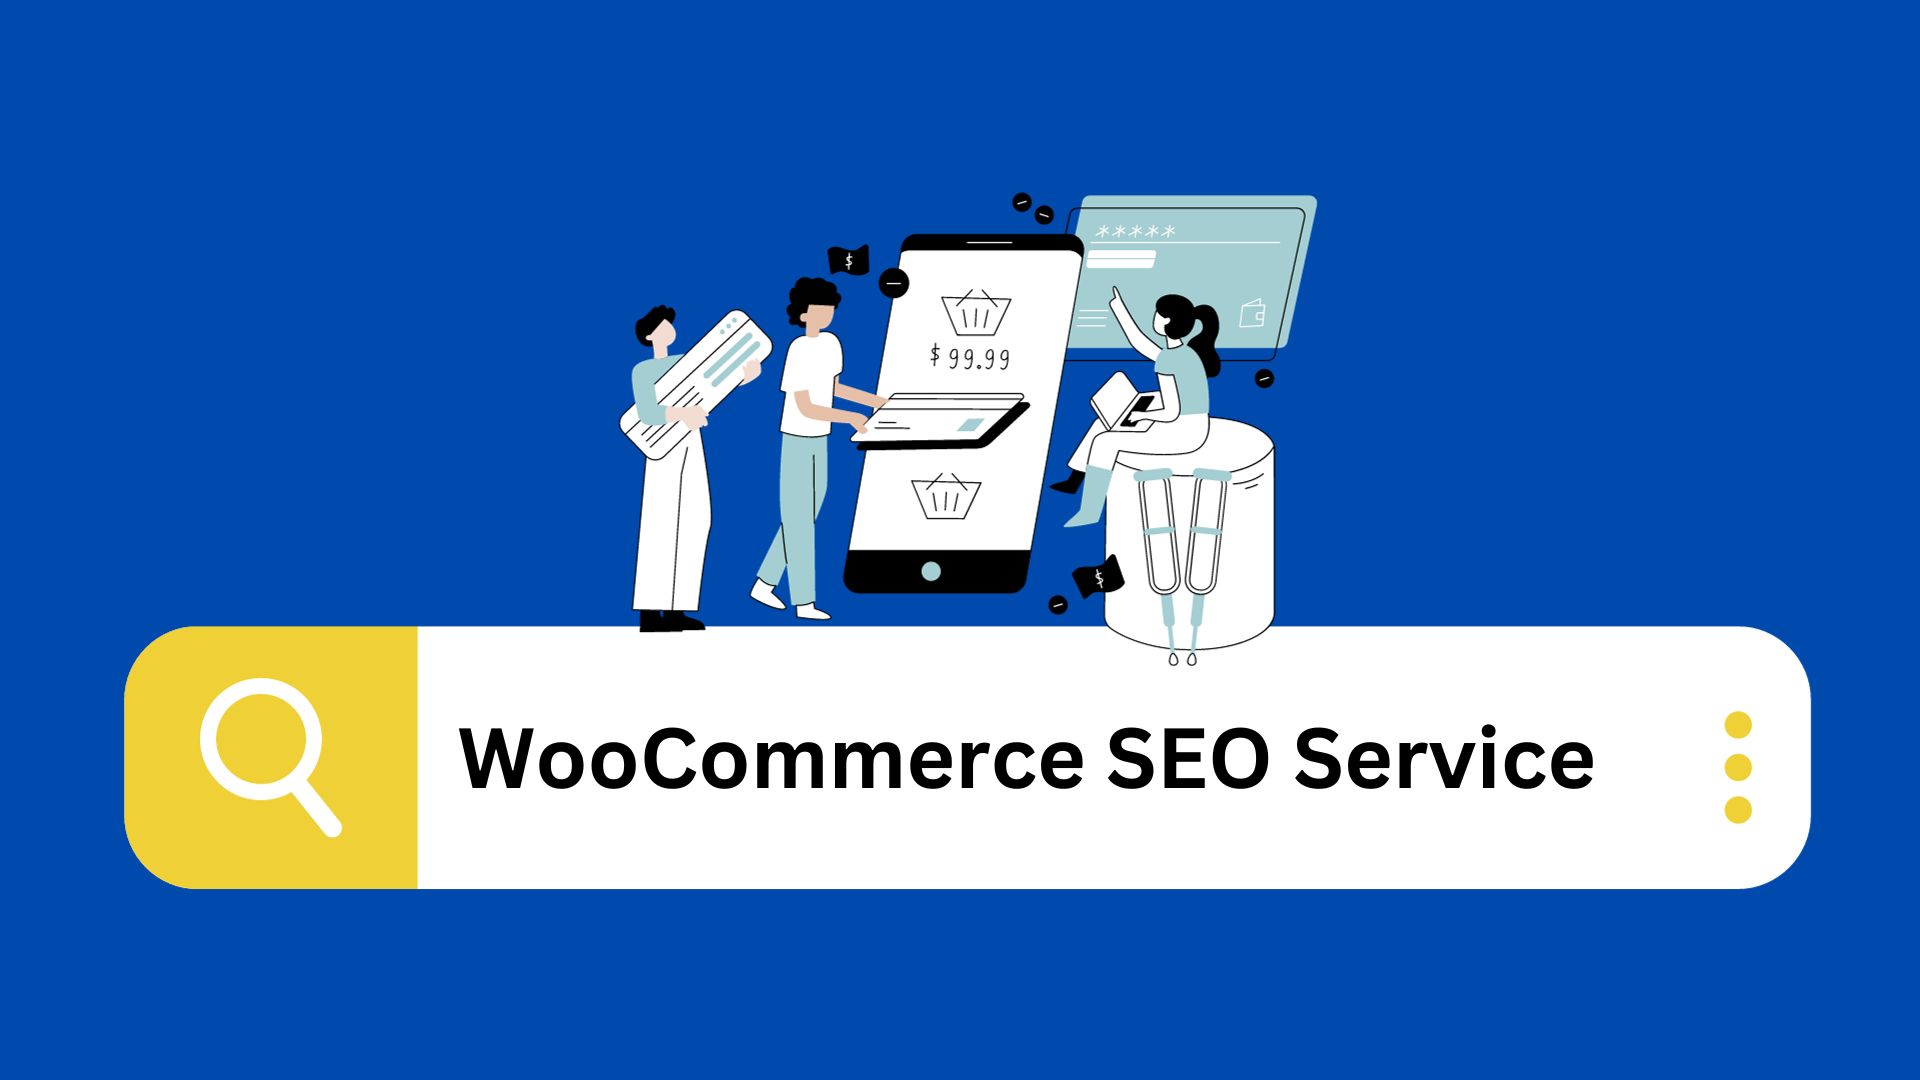 WooCommerce SEO Service